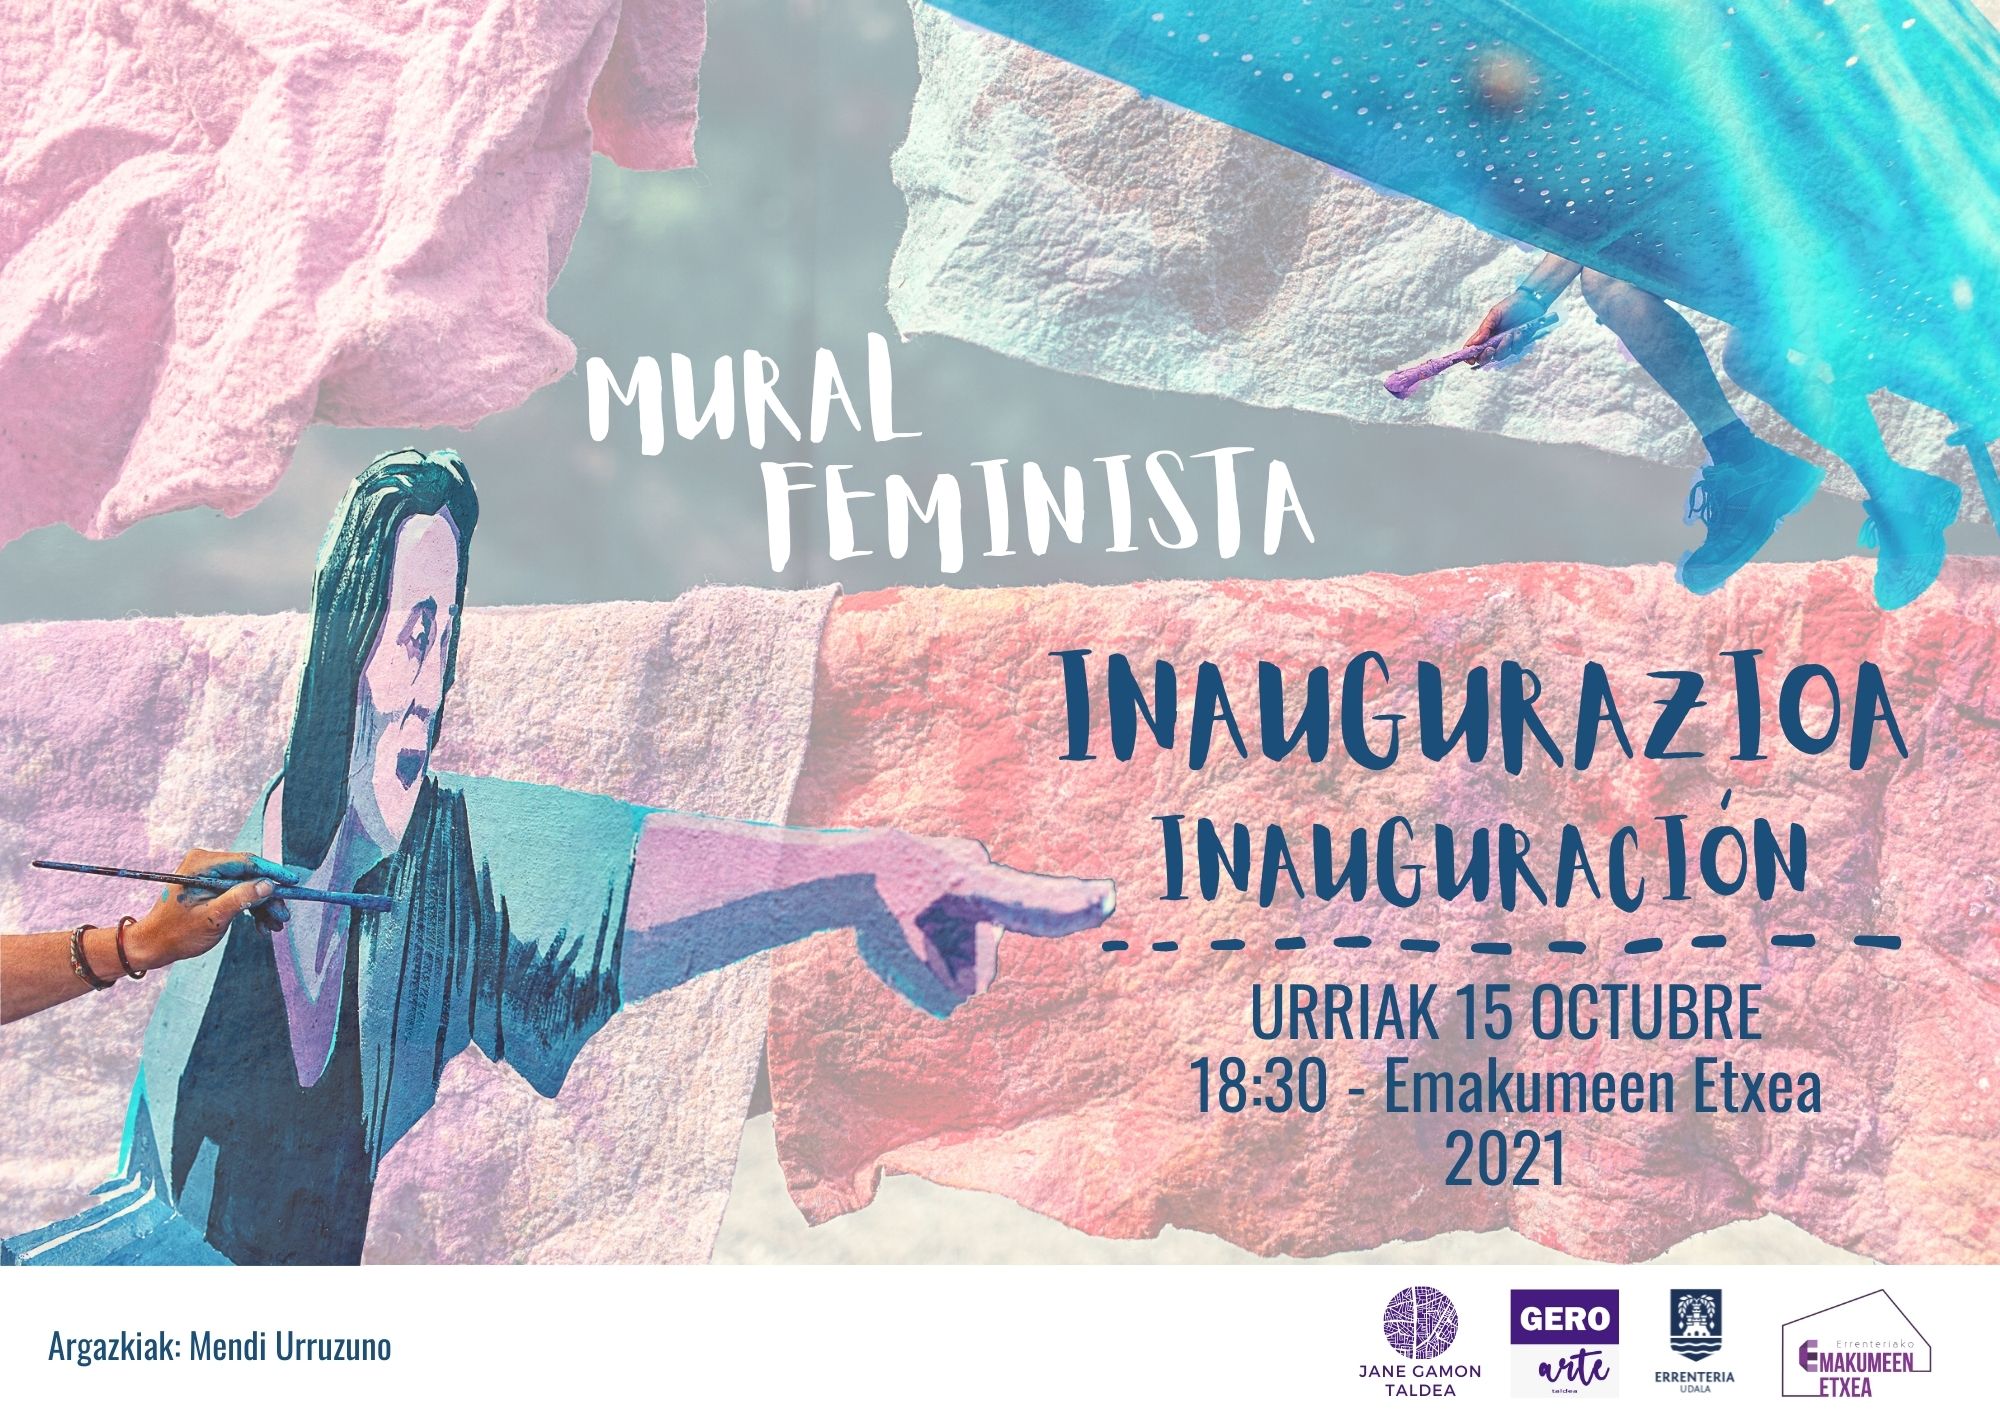 El mural feminista realizado por mujeres este verano se inaugura este viernes